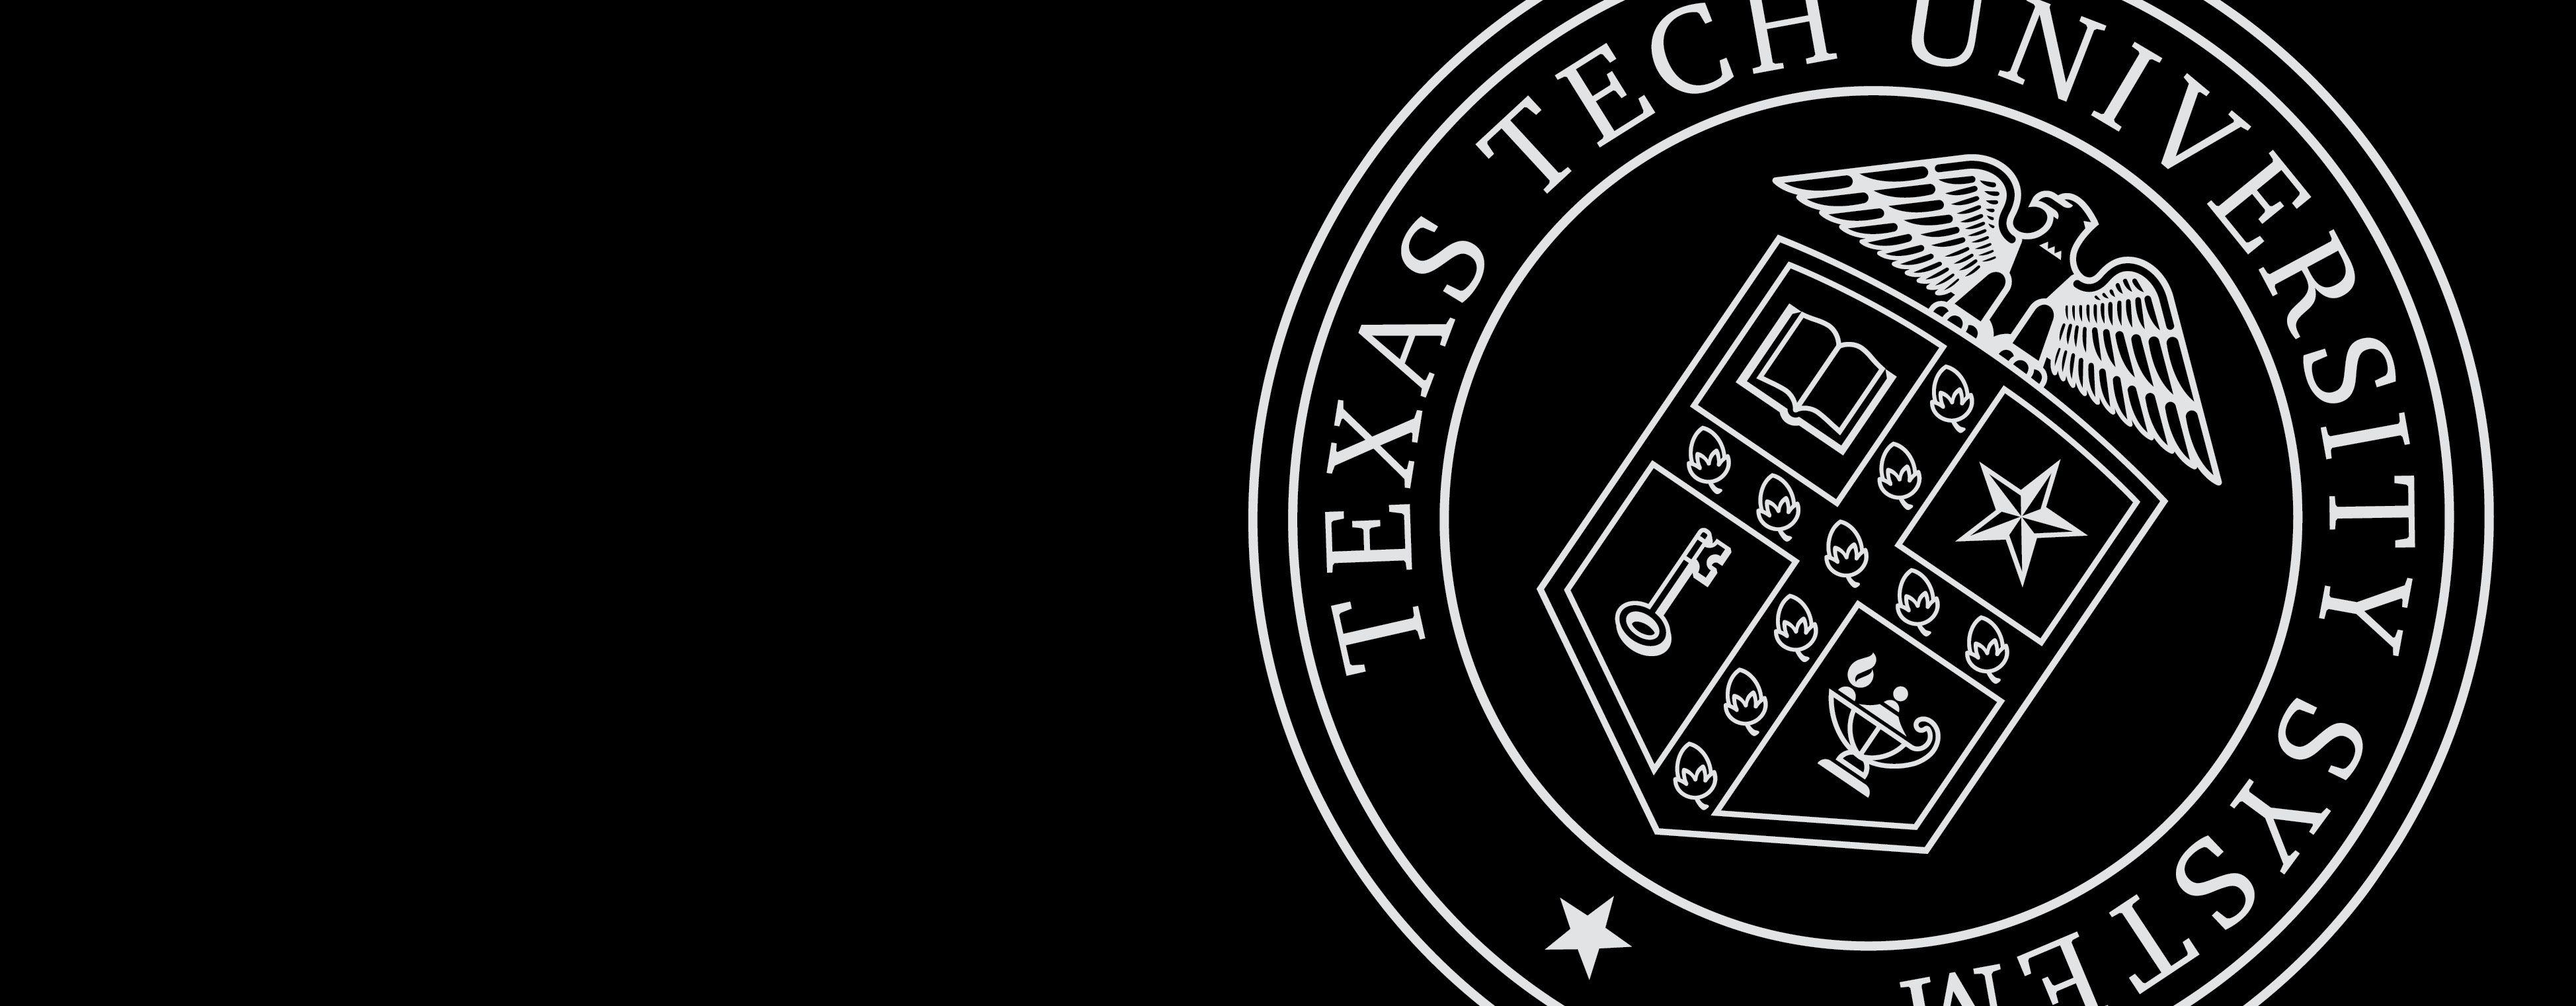 Texas Tech University Logo - Texas Tech University System | Texas Tech University System